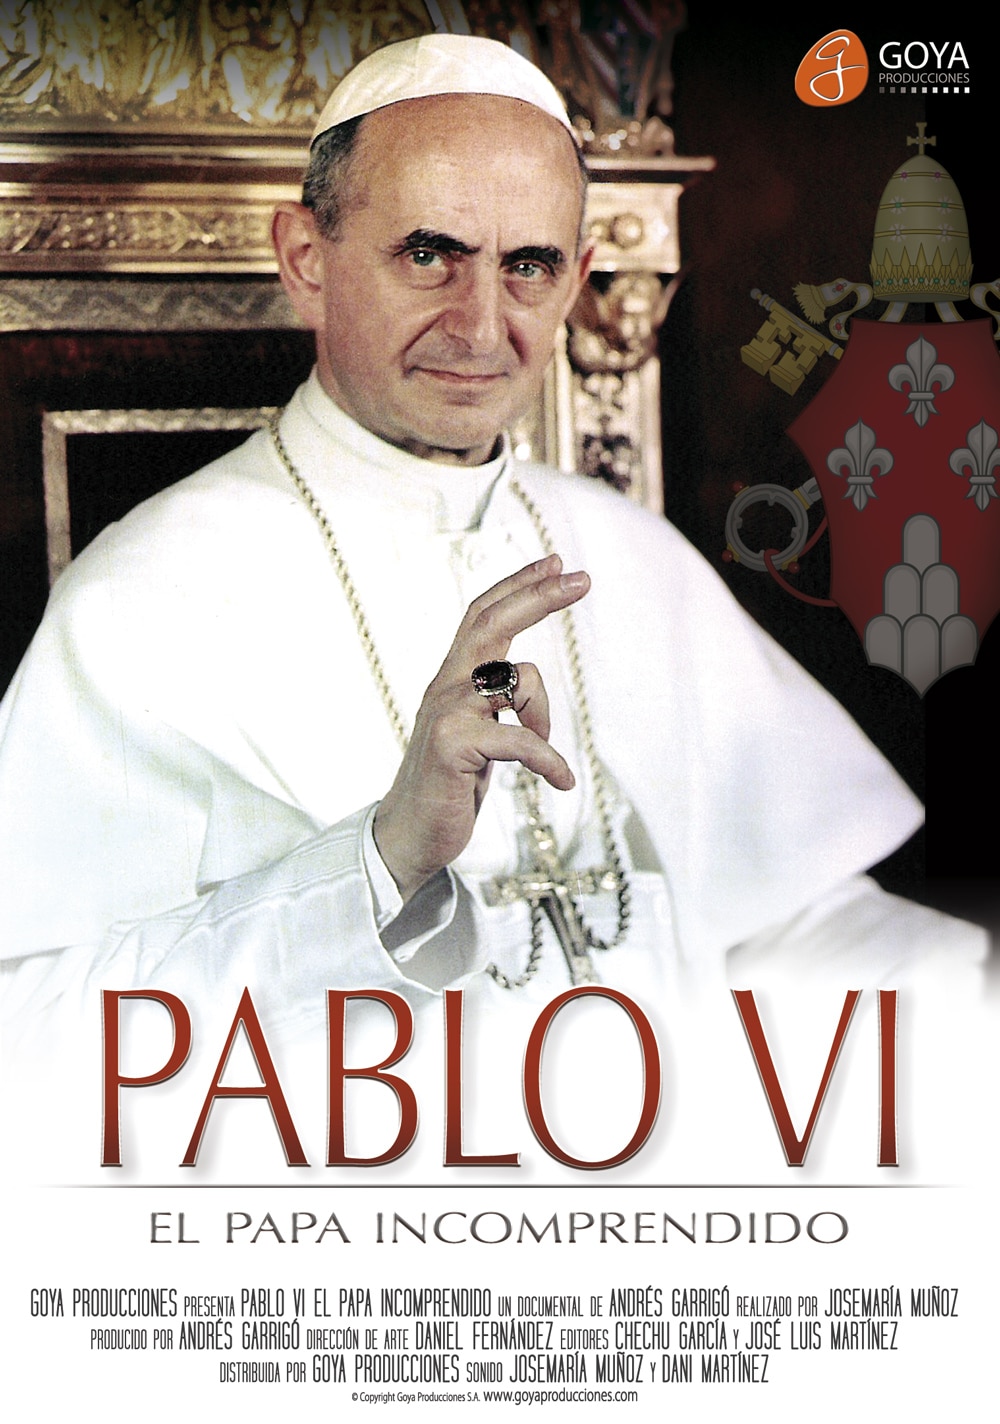 Pablo VI: El Papa incomprendido